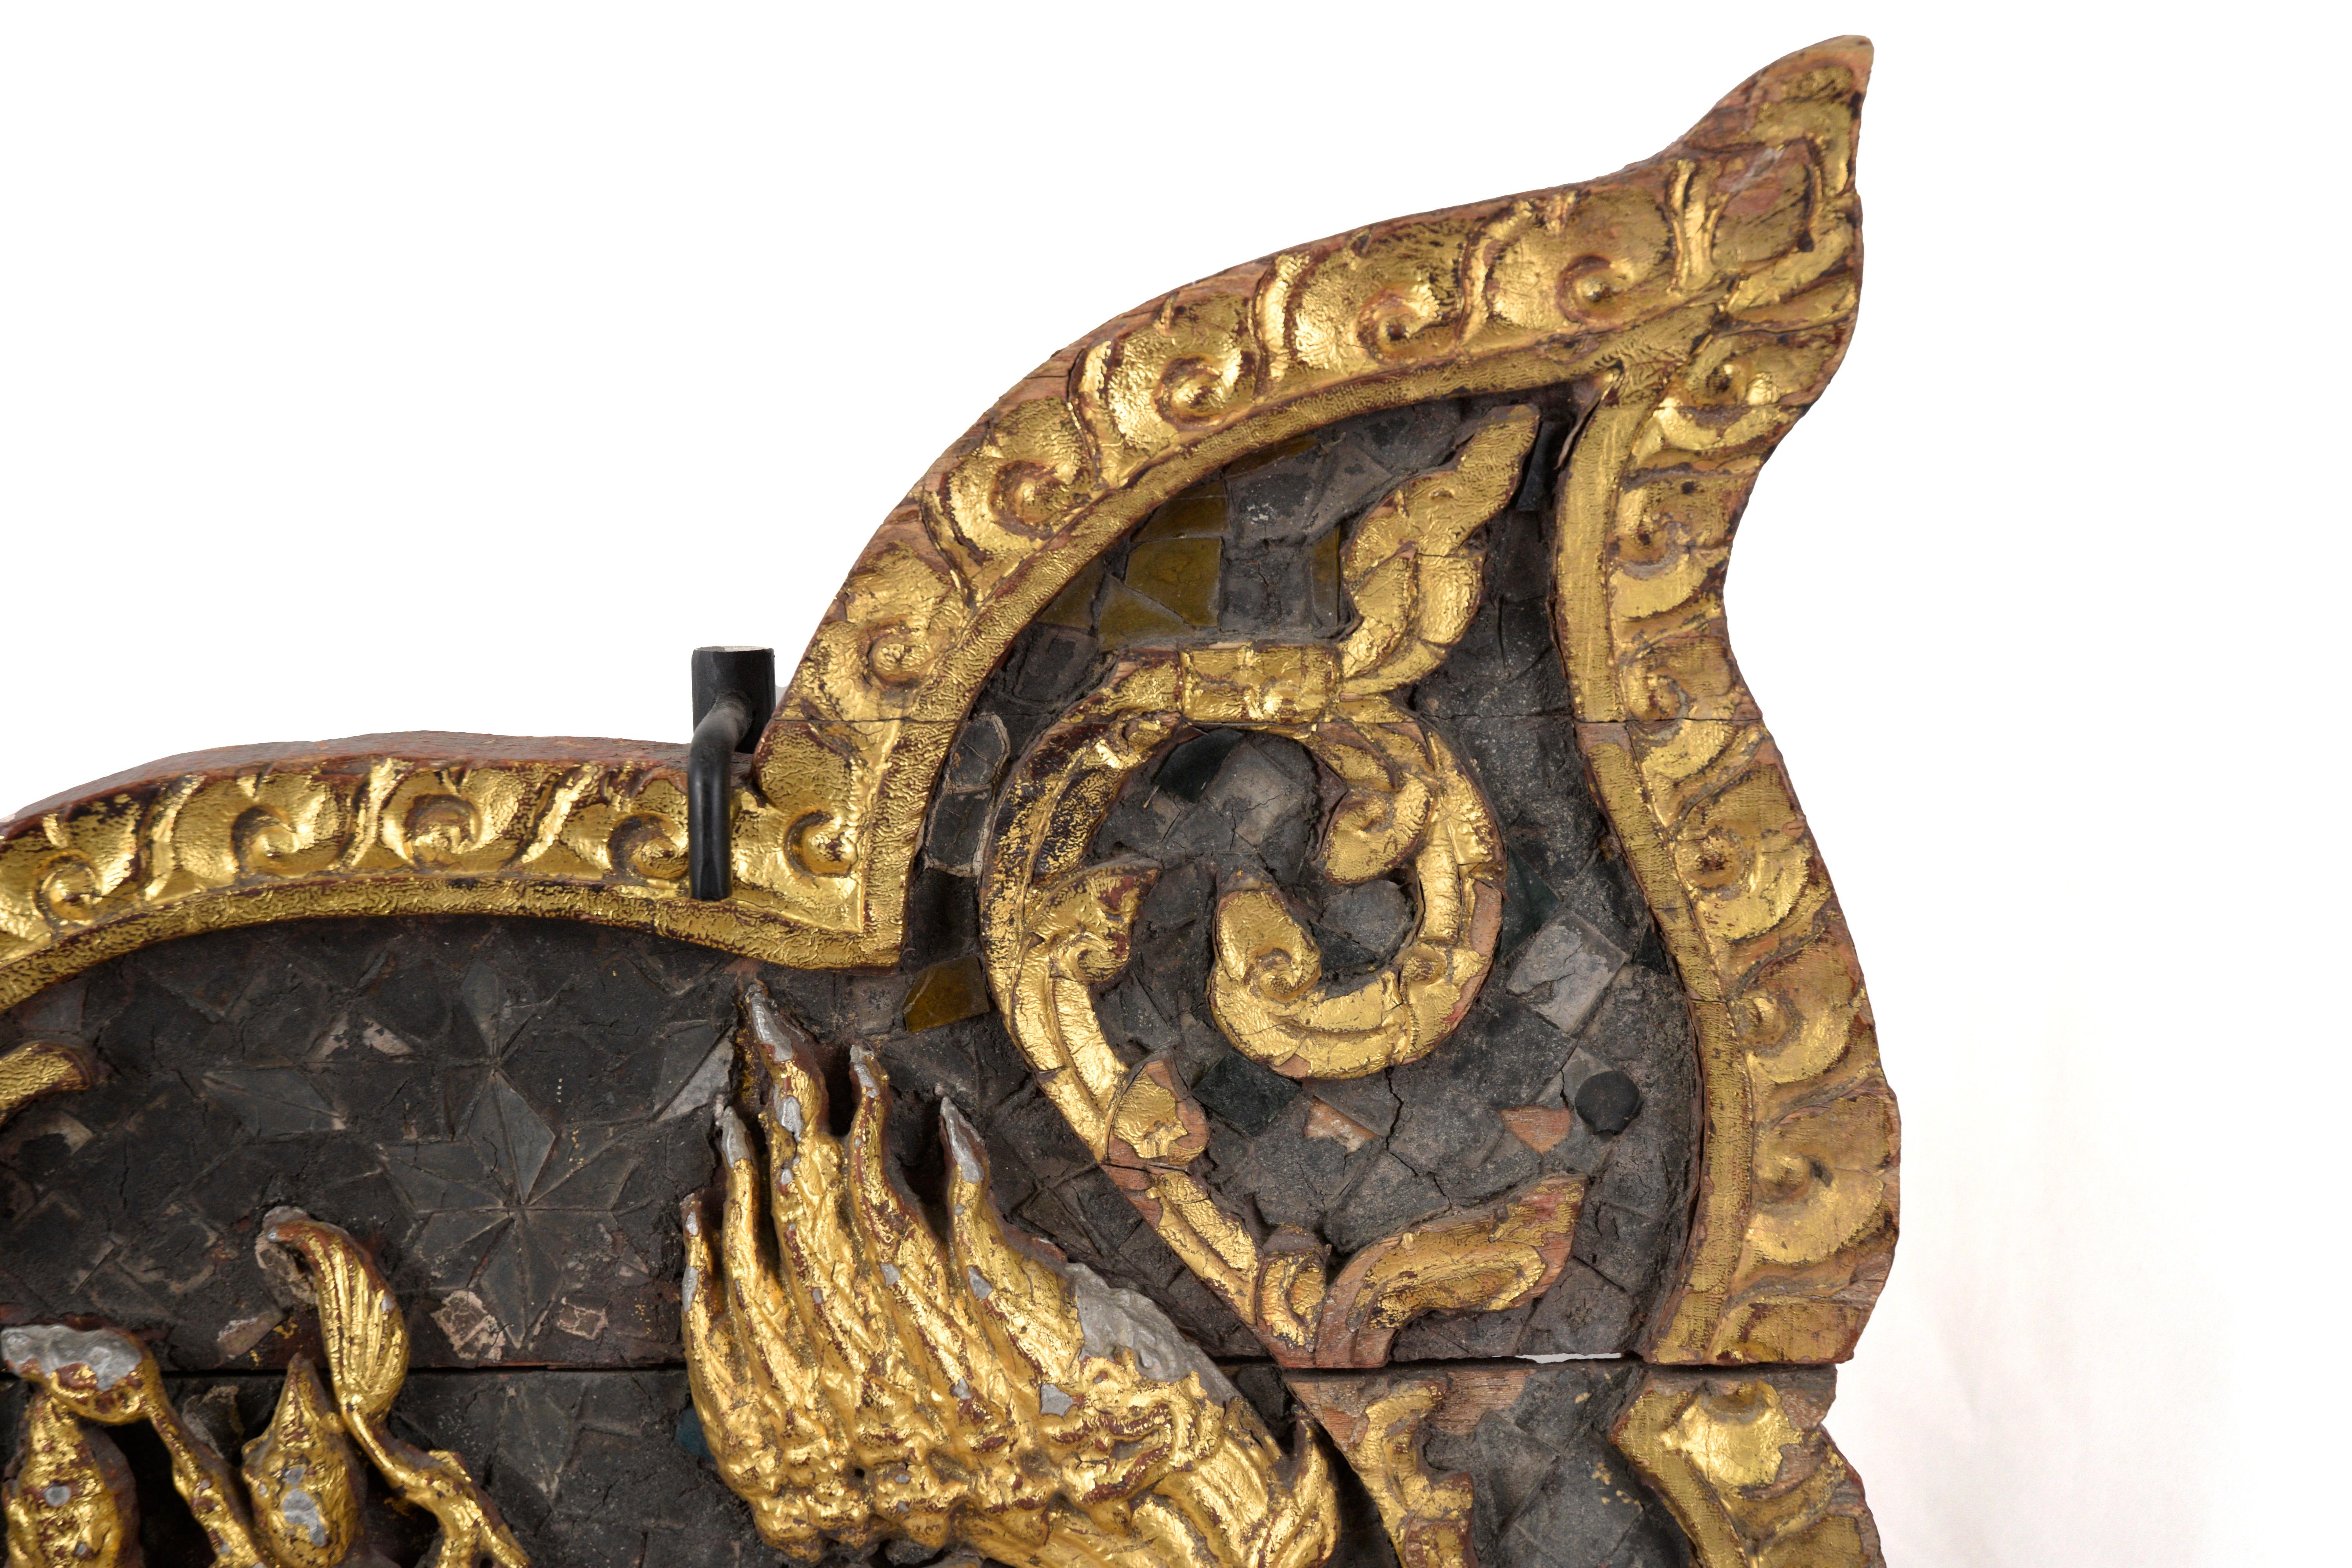 Thai Rattanakosin-Ära geschnitzt und vergoldet Thron Seitenwände

Kunstvoll geschnitzte Paneele mit Vergoldung aus Thailand. Der mittlere Teil dieser Tafeln zeigt Buddha im Liegen, wahrscheinlich auf einem großen, verzierten Bett. Zu seinen Füßen